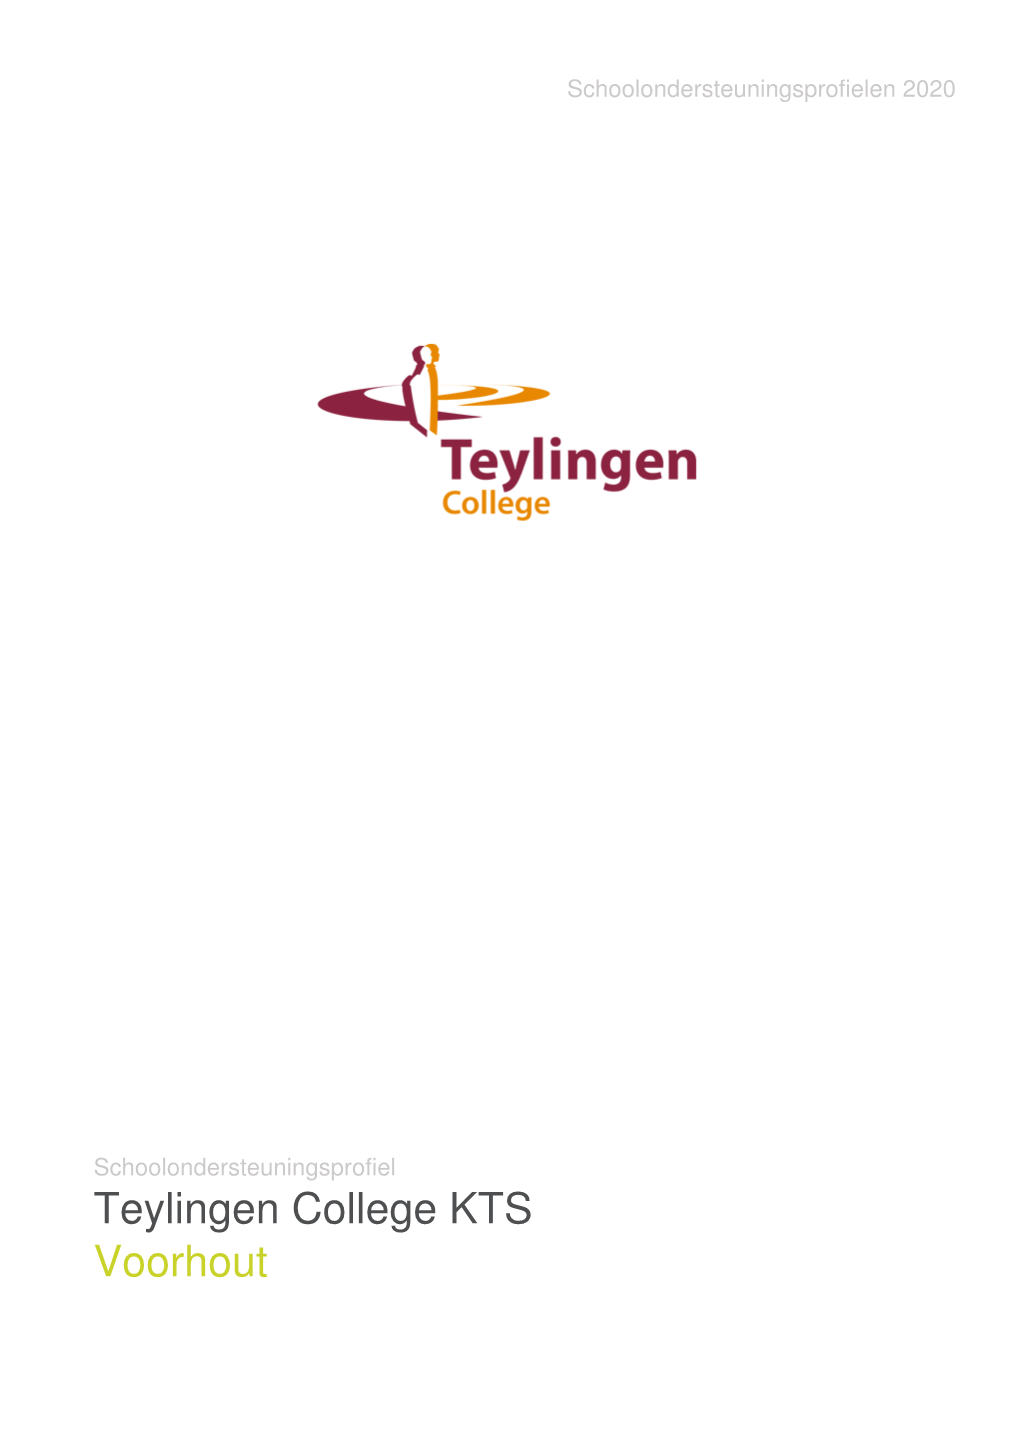 Teylingen College KTS Voorhout